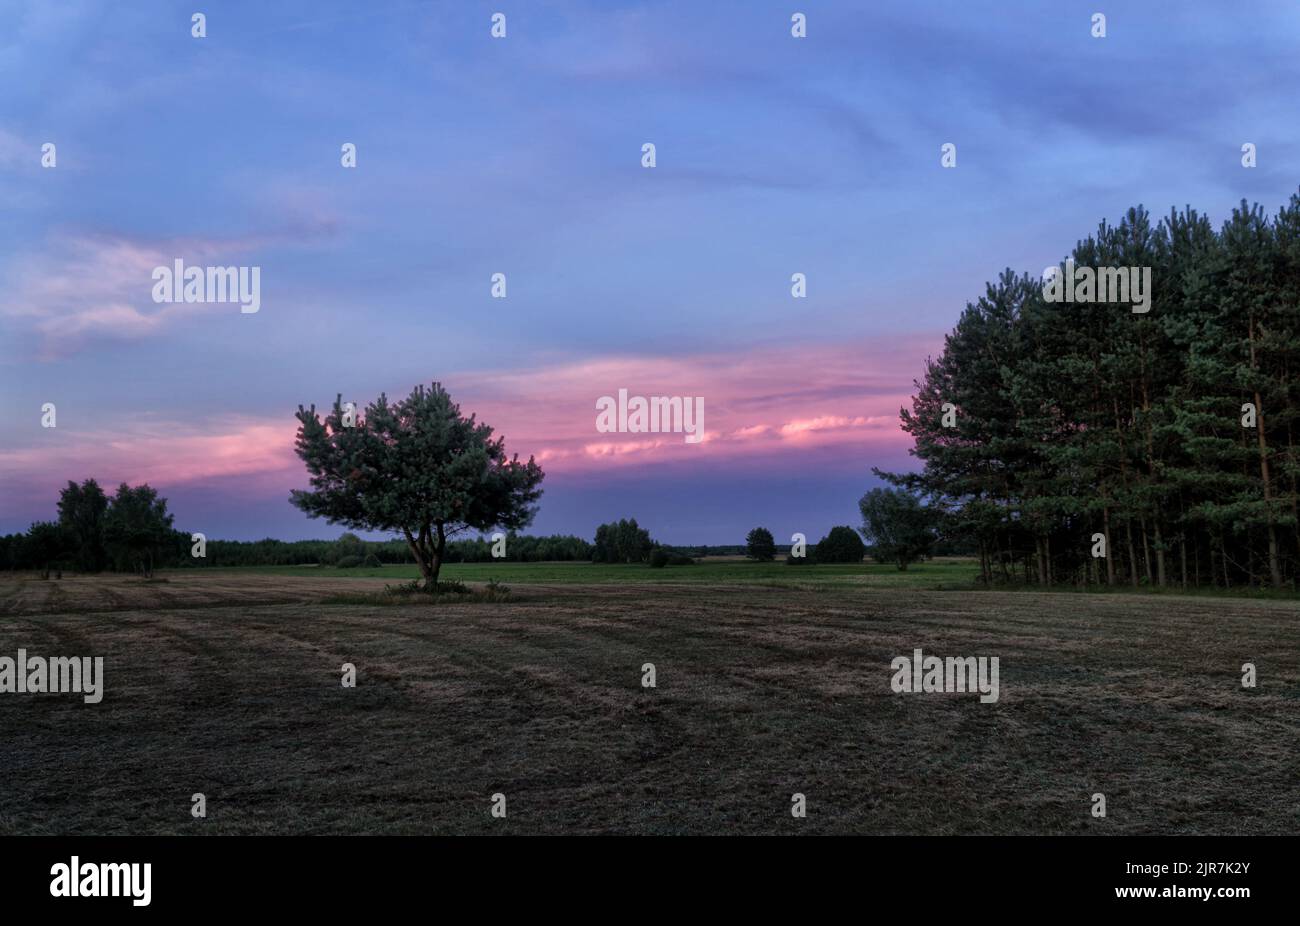 Tramonto sul prato con pini in estate. Paesaggio del Parco Nazionale di Biebrza in Polonia, Europa. Nuvole drammatiche sulla prateria. Foto Stock